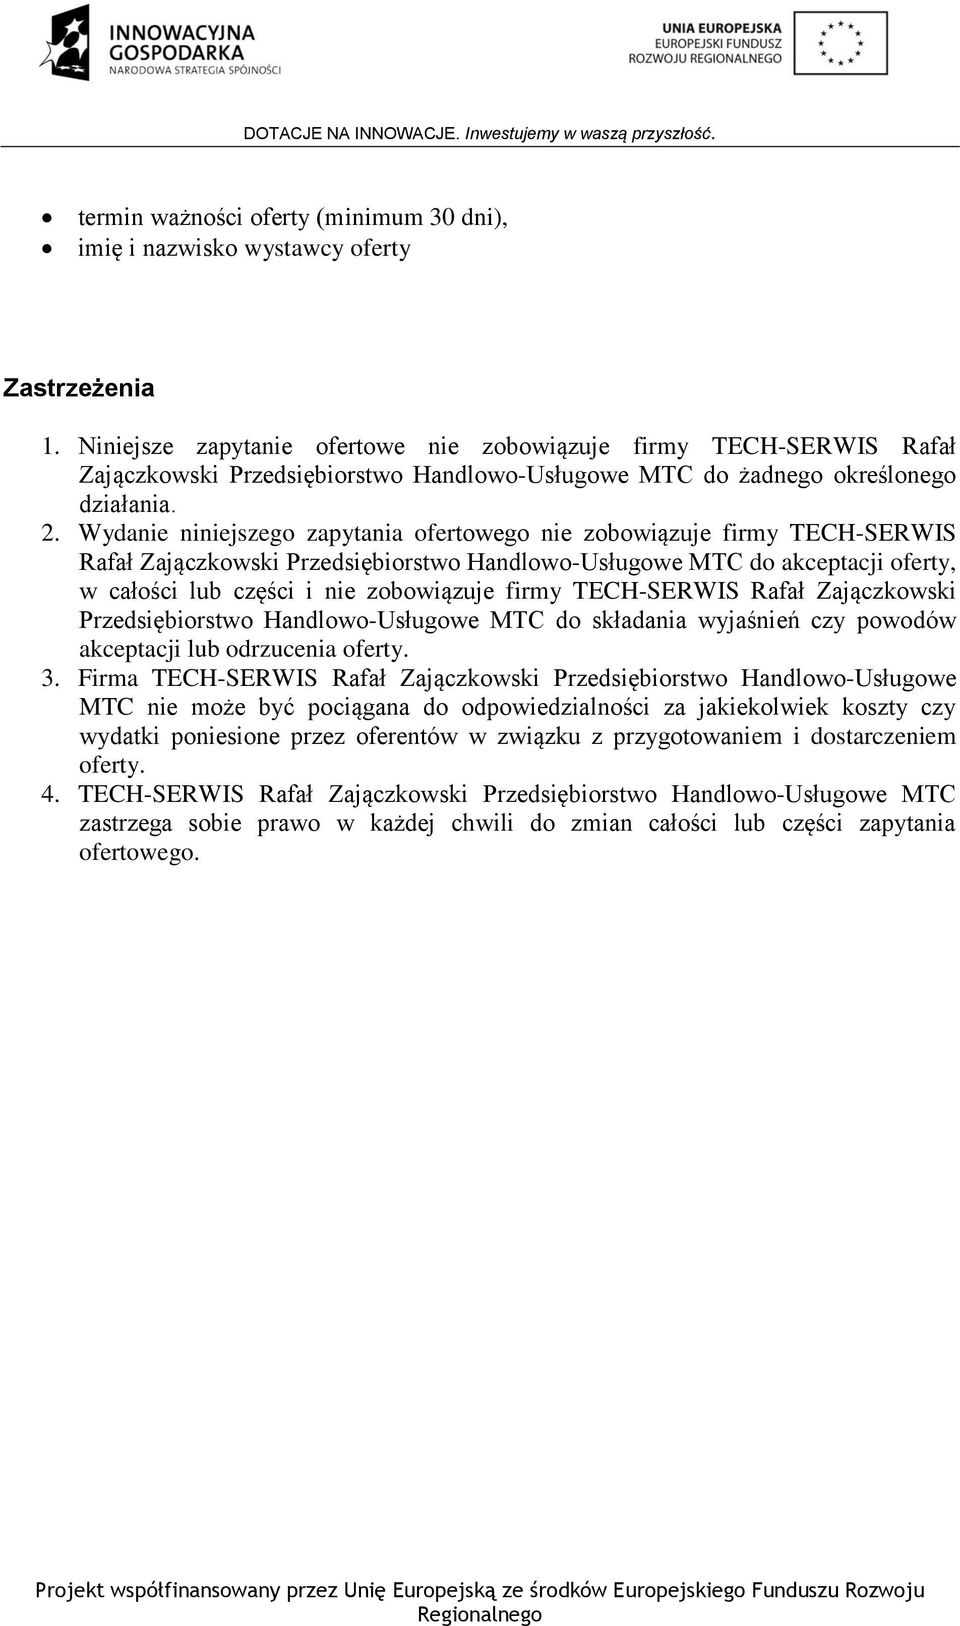 Wydanie niniejszego zapytania ofertowego nie zobowiązuje firmy TECH-SERWIS Rafał Zajączkowski Przedsiębiorstwo Handlowo-Usługowe MTC do akceptacji oferty, w całości lub części i nie zobowiązuje firmy